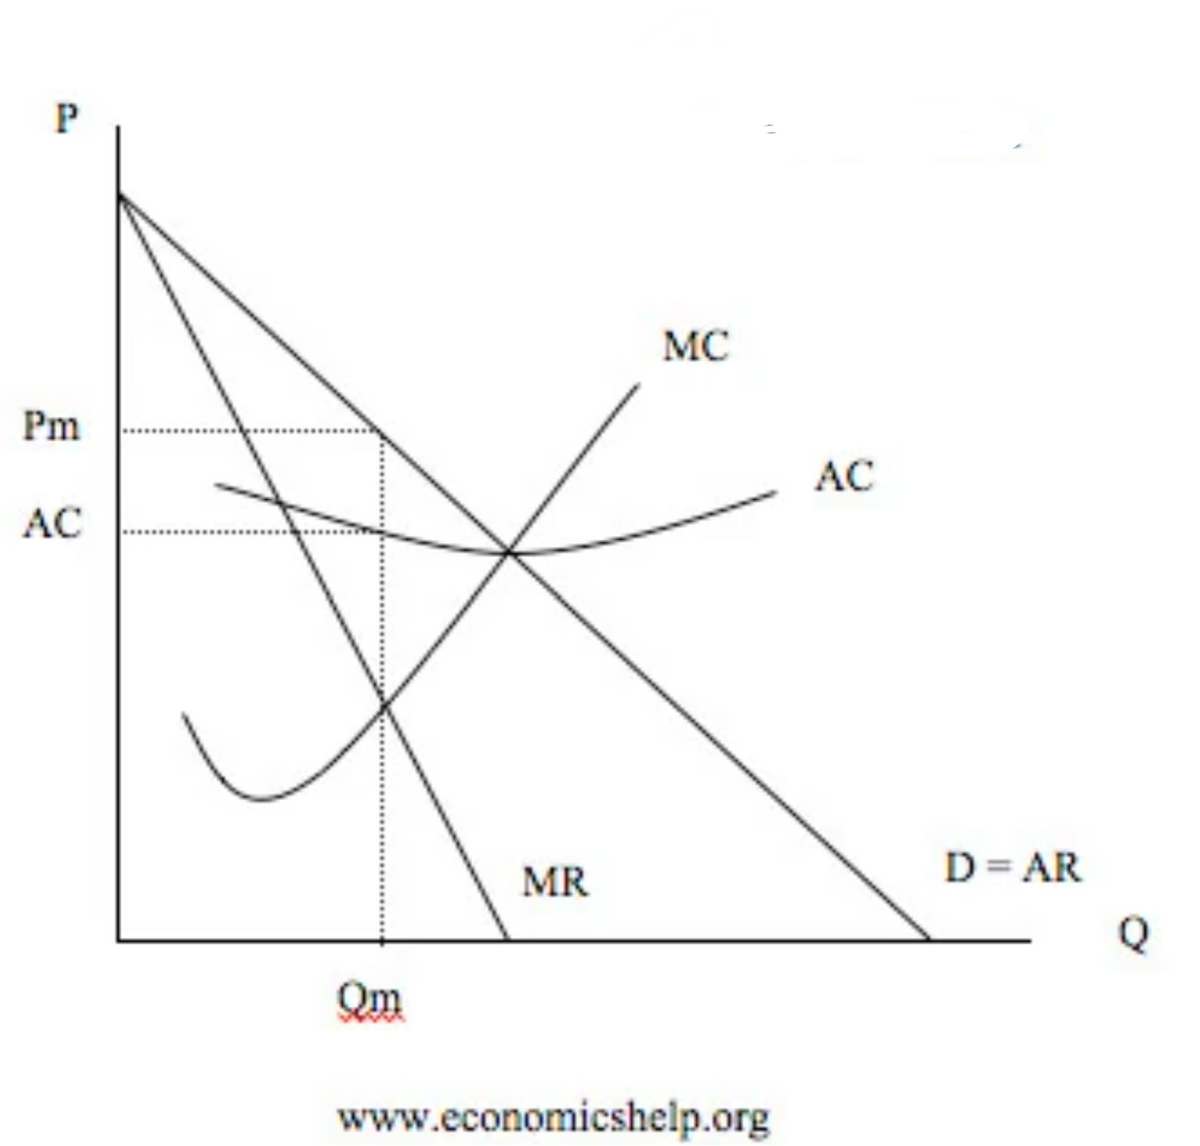 P
Pm
AC
MC
AC
D=AR
MR
Qm
www.economicshelp.org